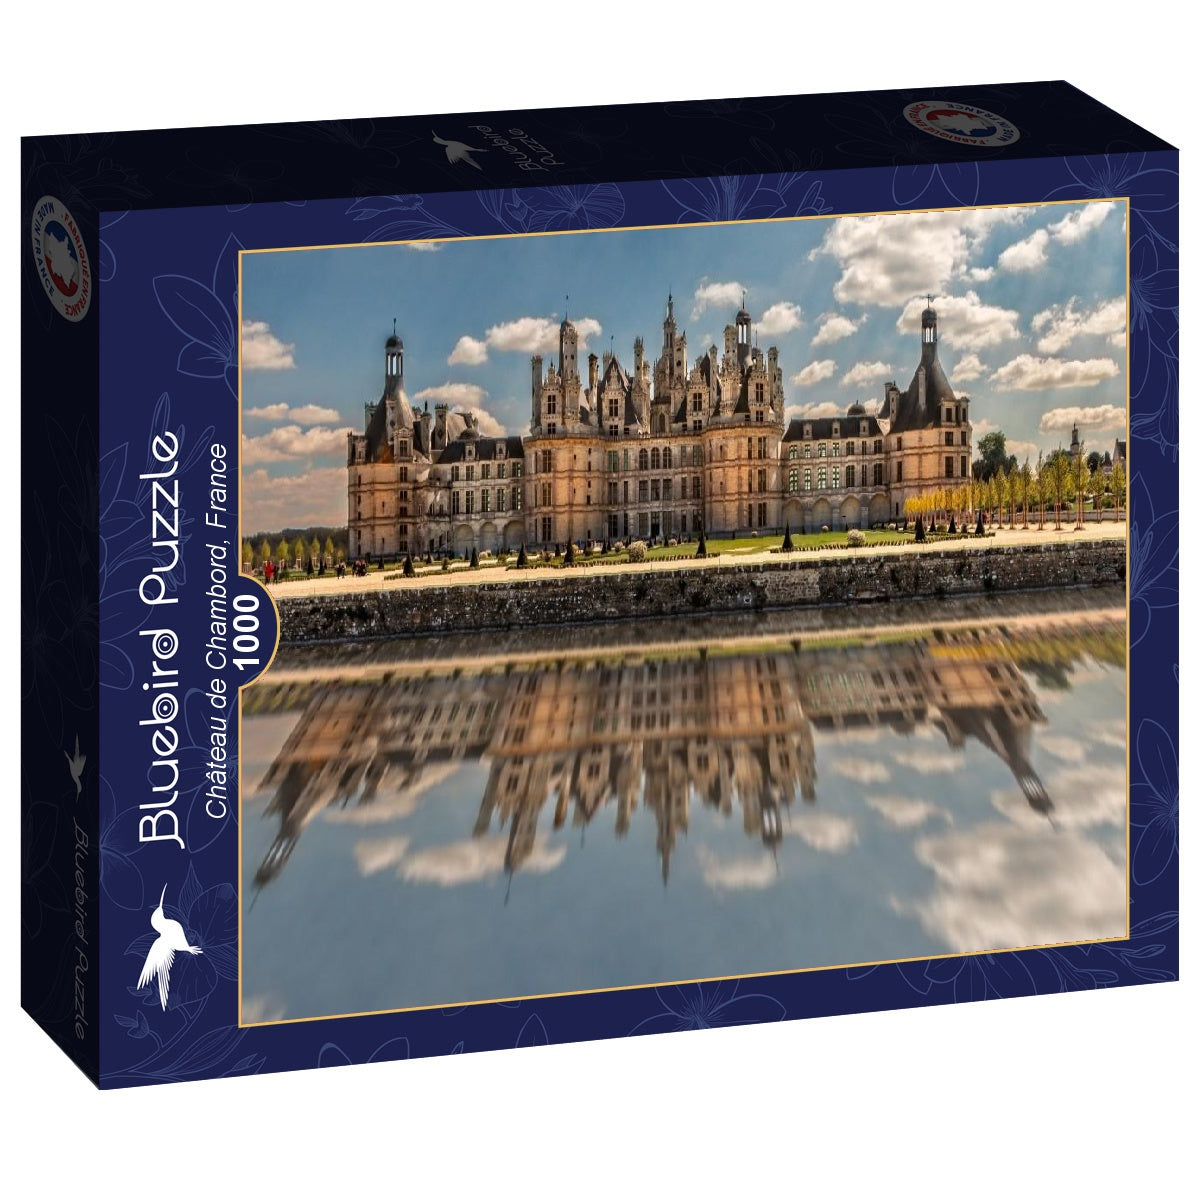 Bluebird Puzzle - Château de Chambord, France - 1000 Piece Jigsaw Puzzle